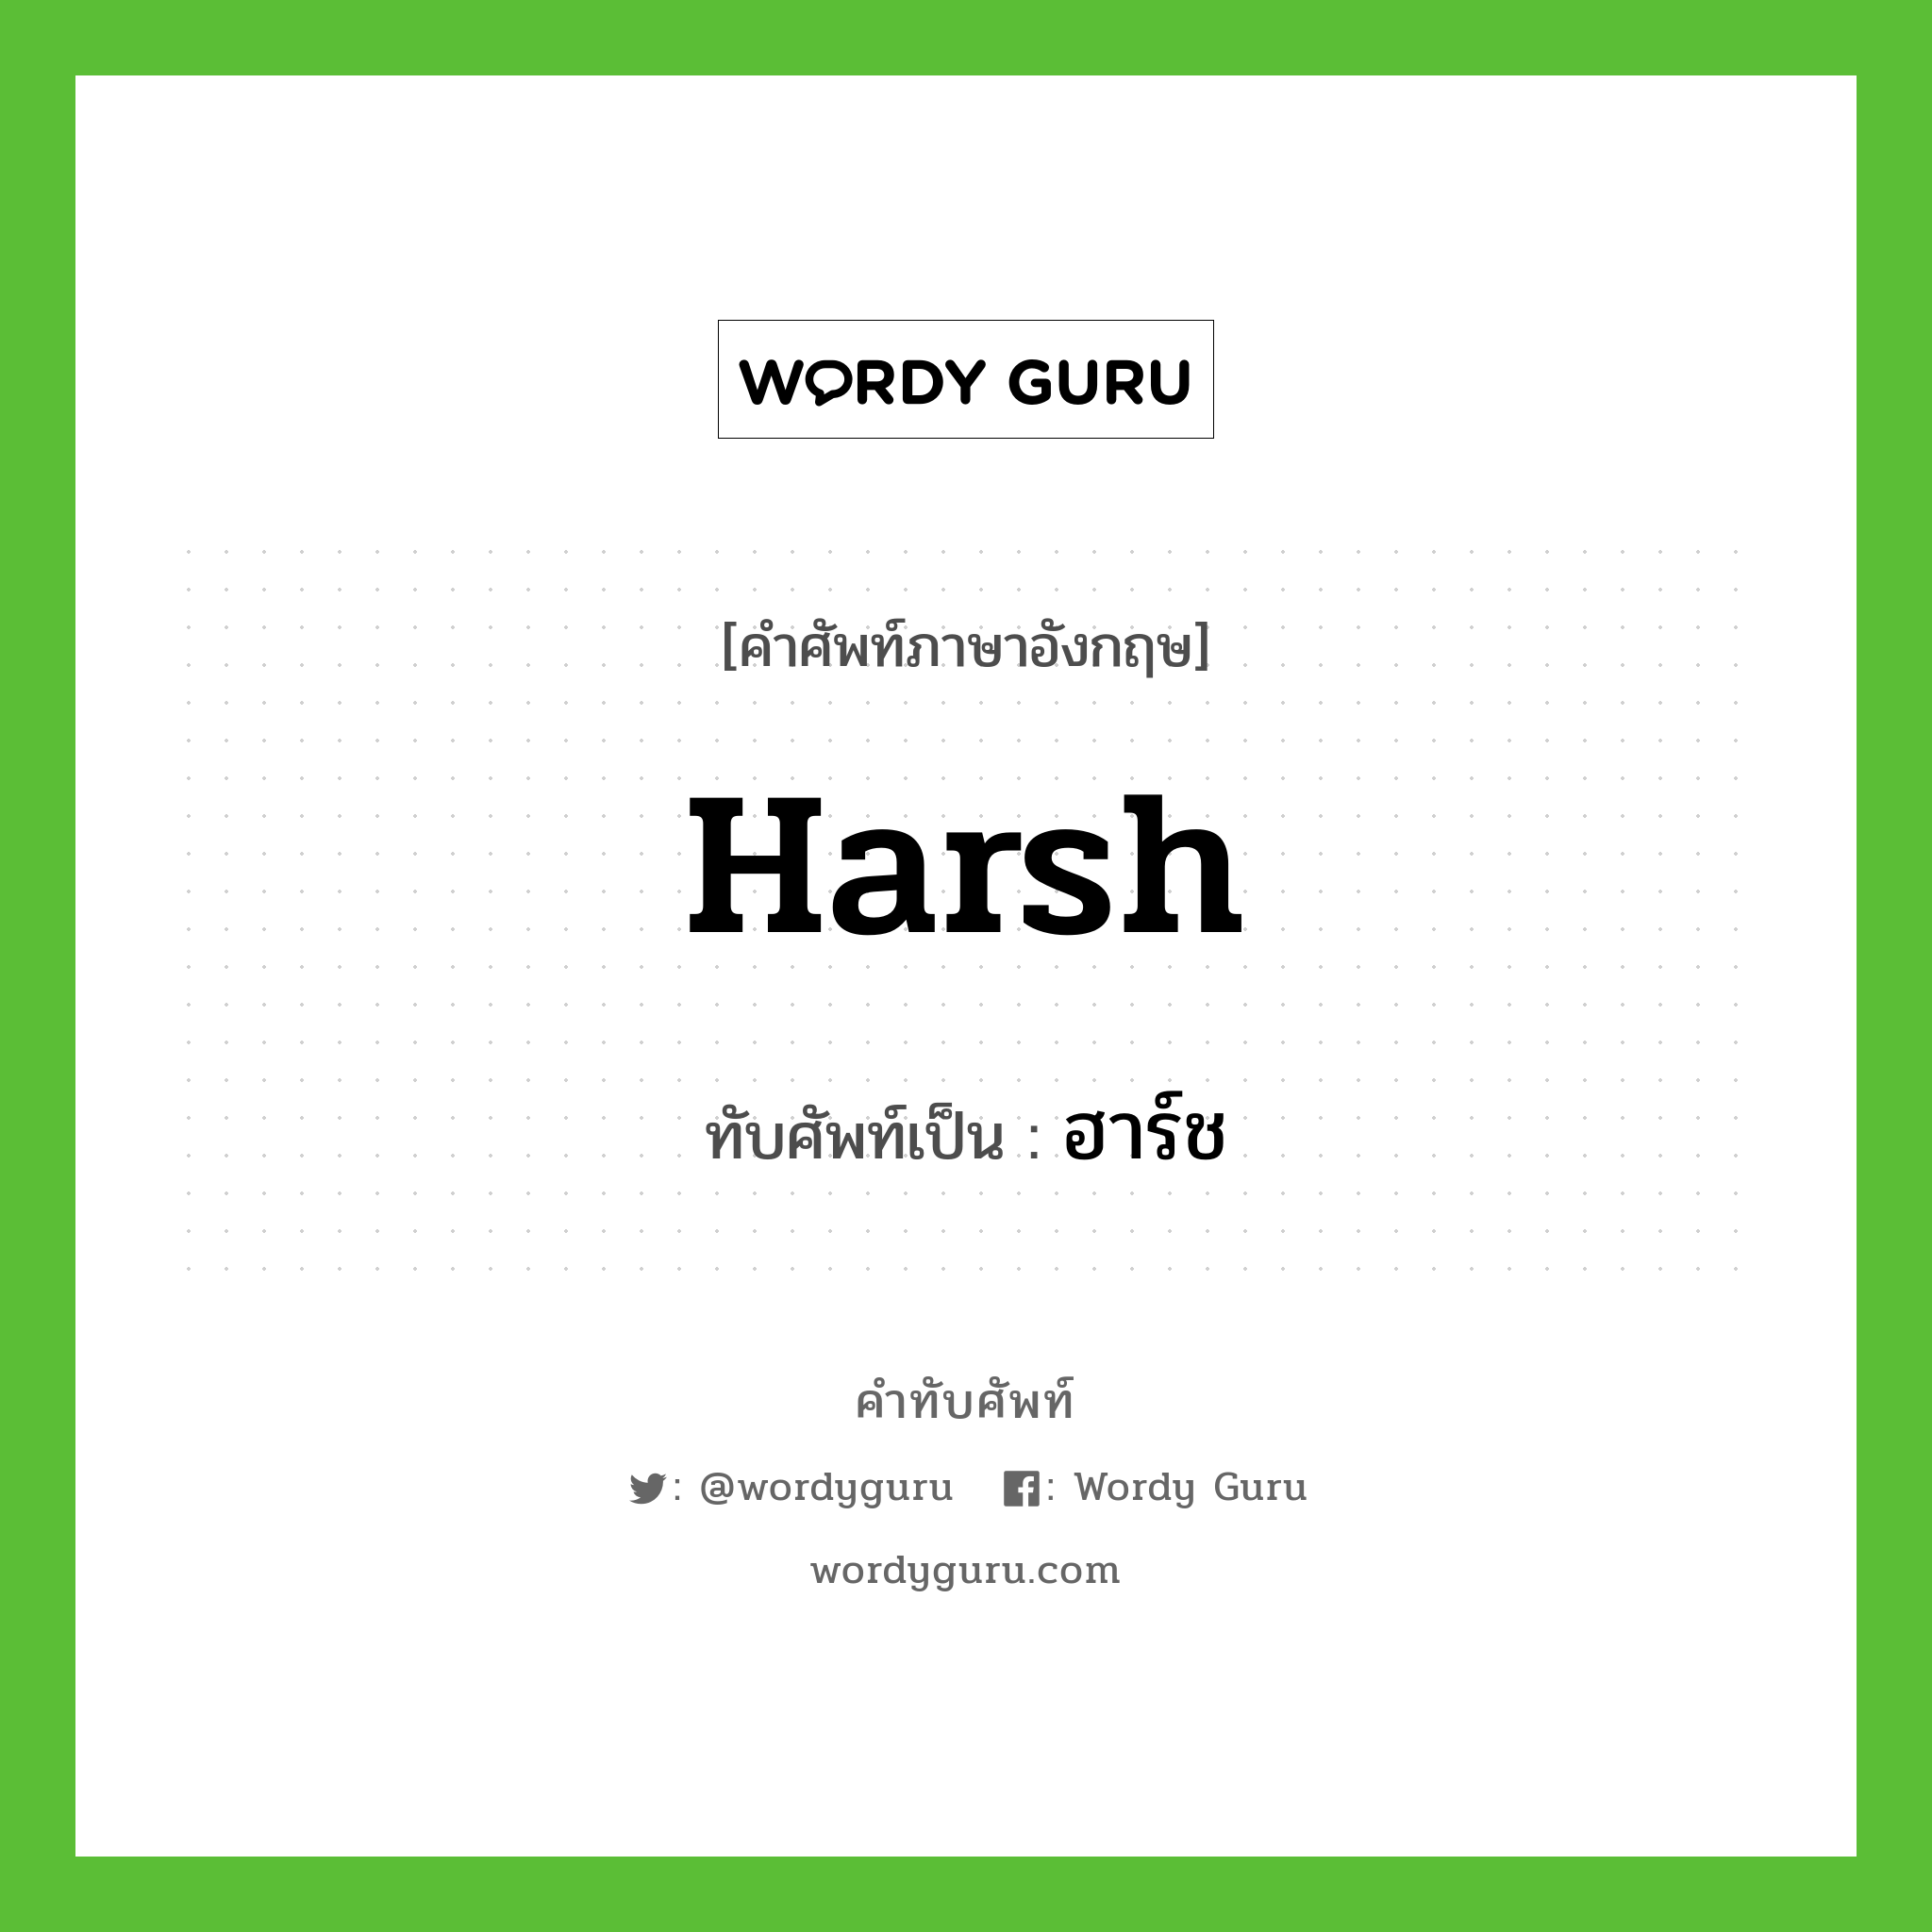 harsh เขียนเป็นคำไทยว่าอะไร?, คำศัพท์ภาษาอังกฤษ harsh ทับศัพท์เป็น ฮาร์ช